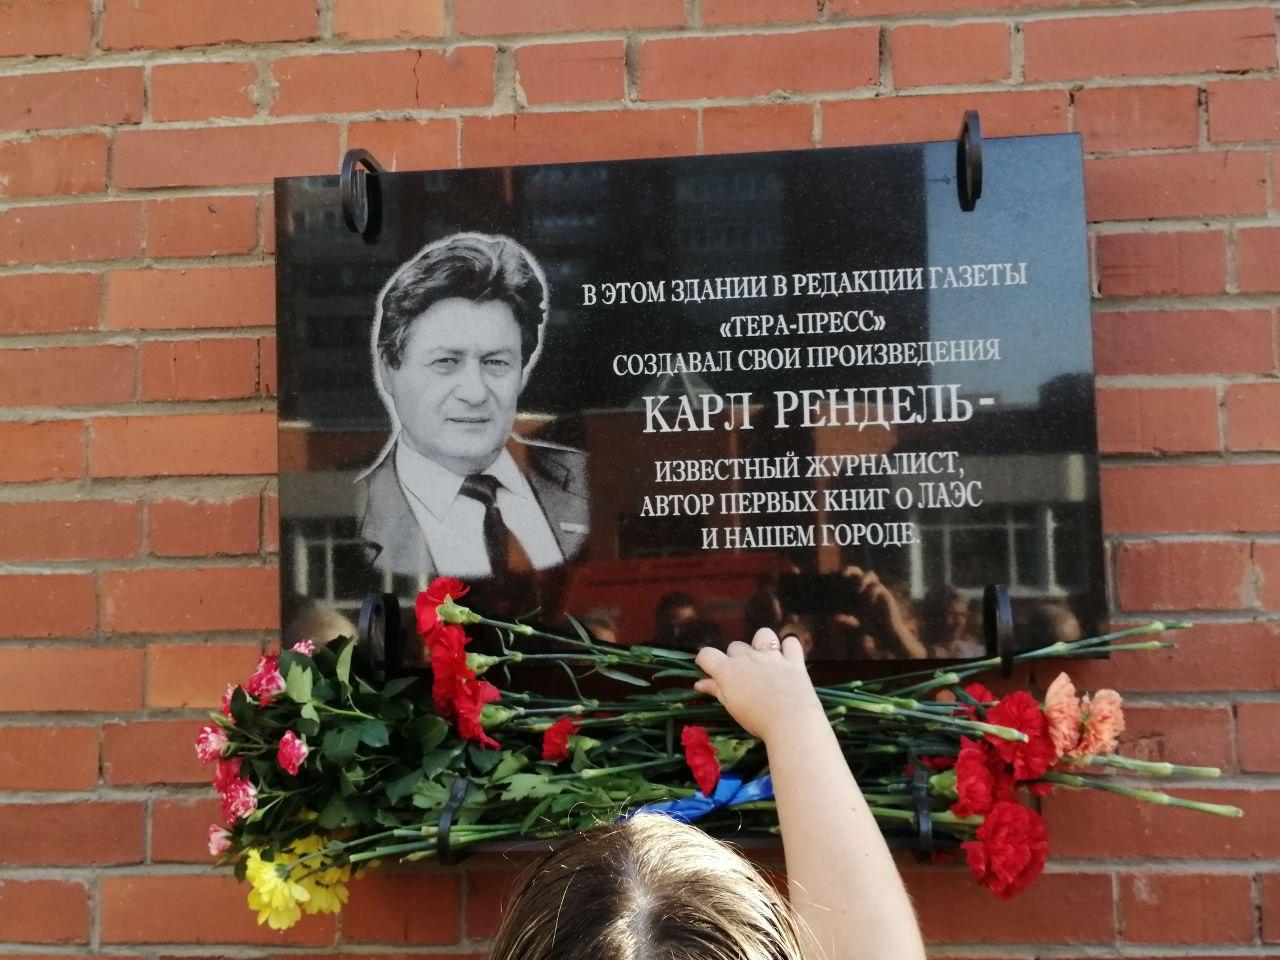 В Сосновом Бору открыли памятную доску известному журналисту Карлу Ренделю